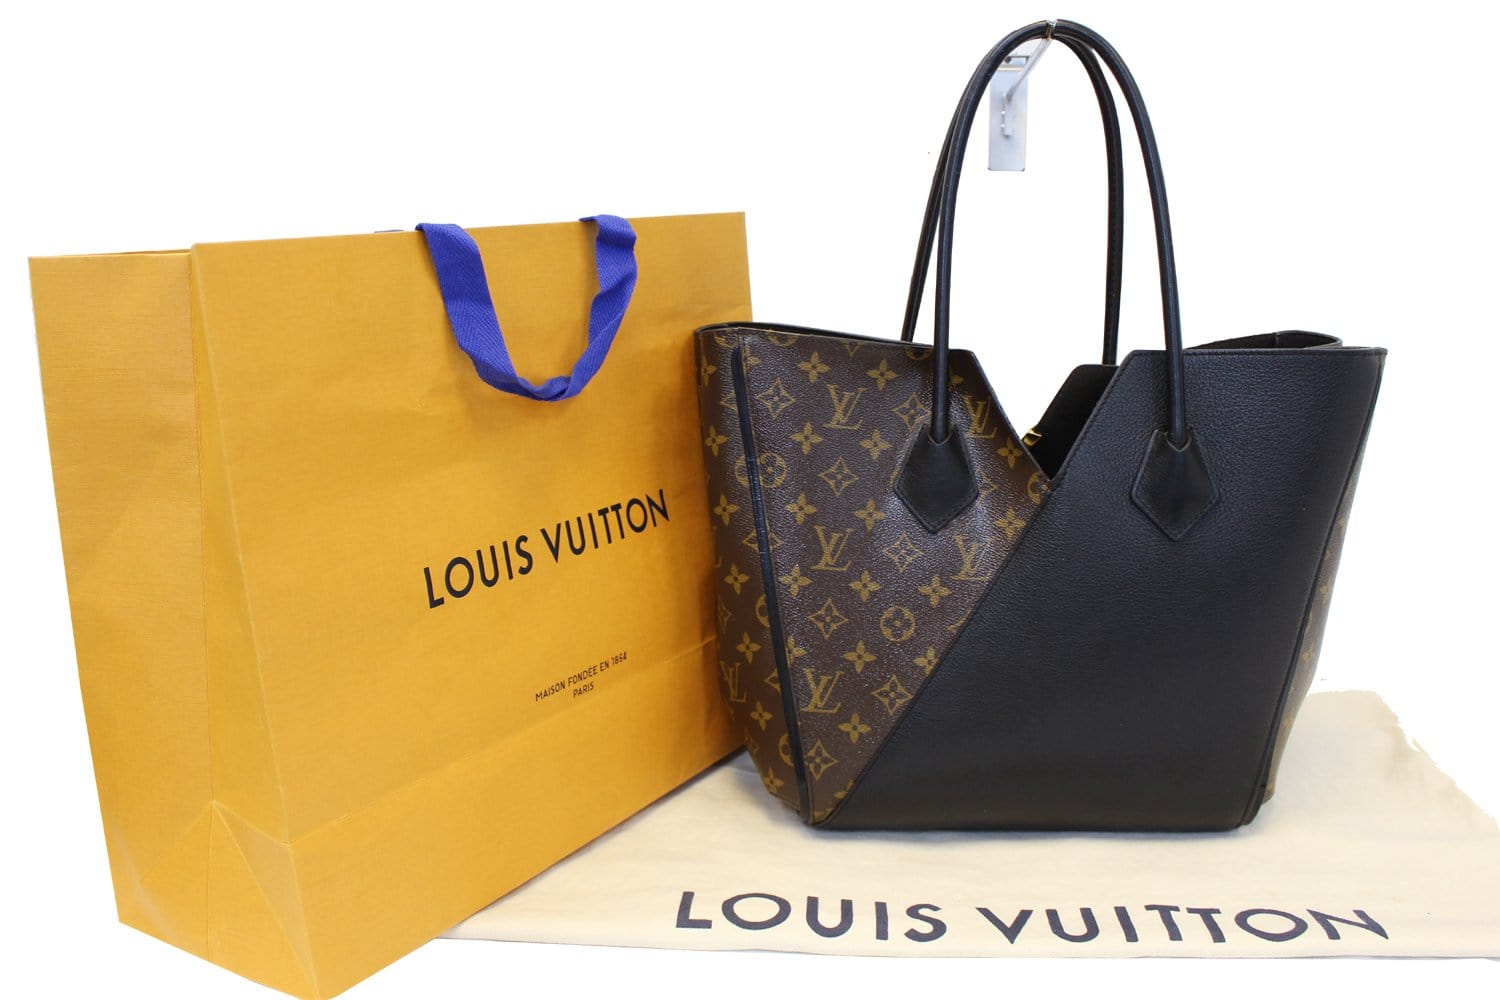 LOUIS VUITTON Monogram Canvas Black Leather Kimono Tote Bag